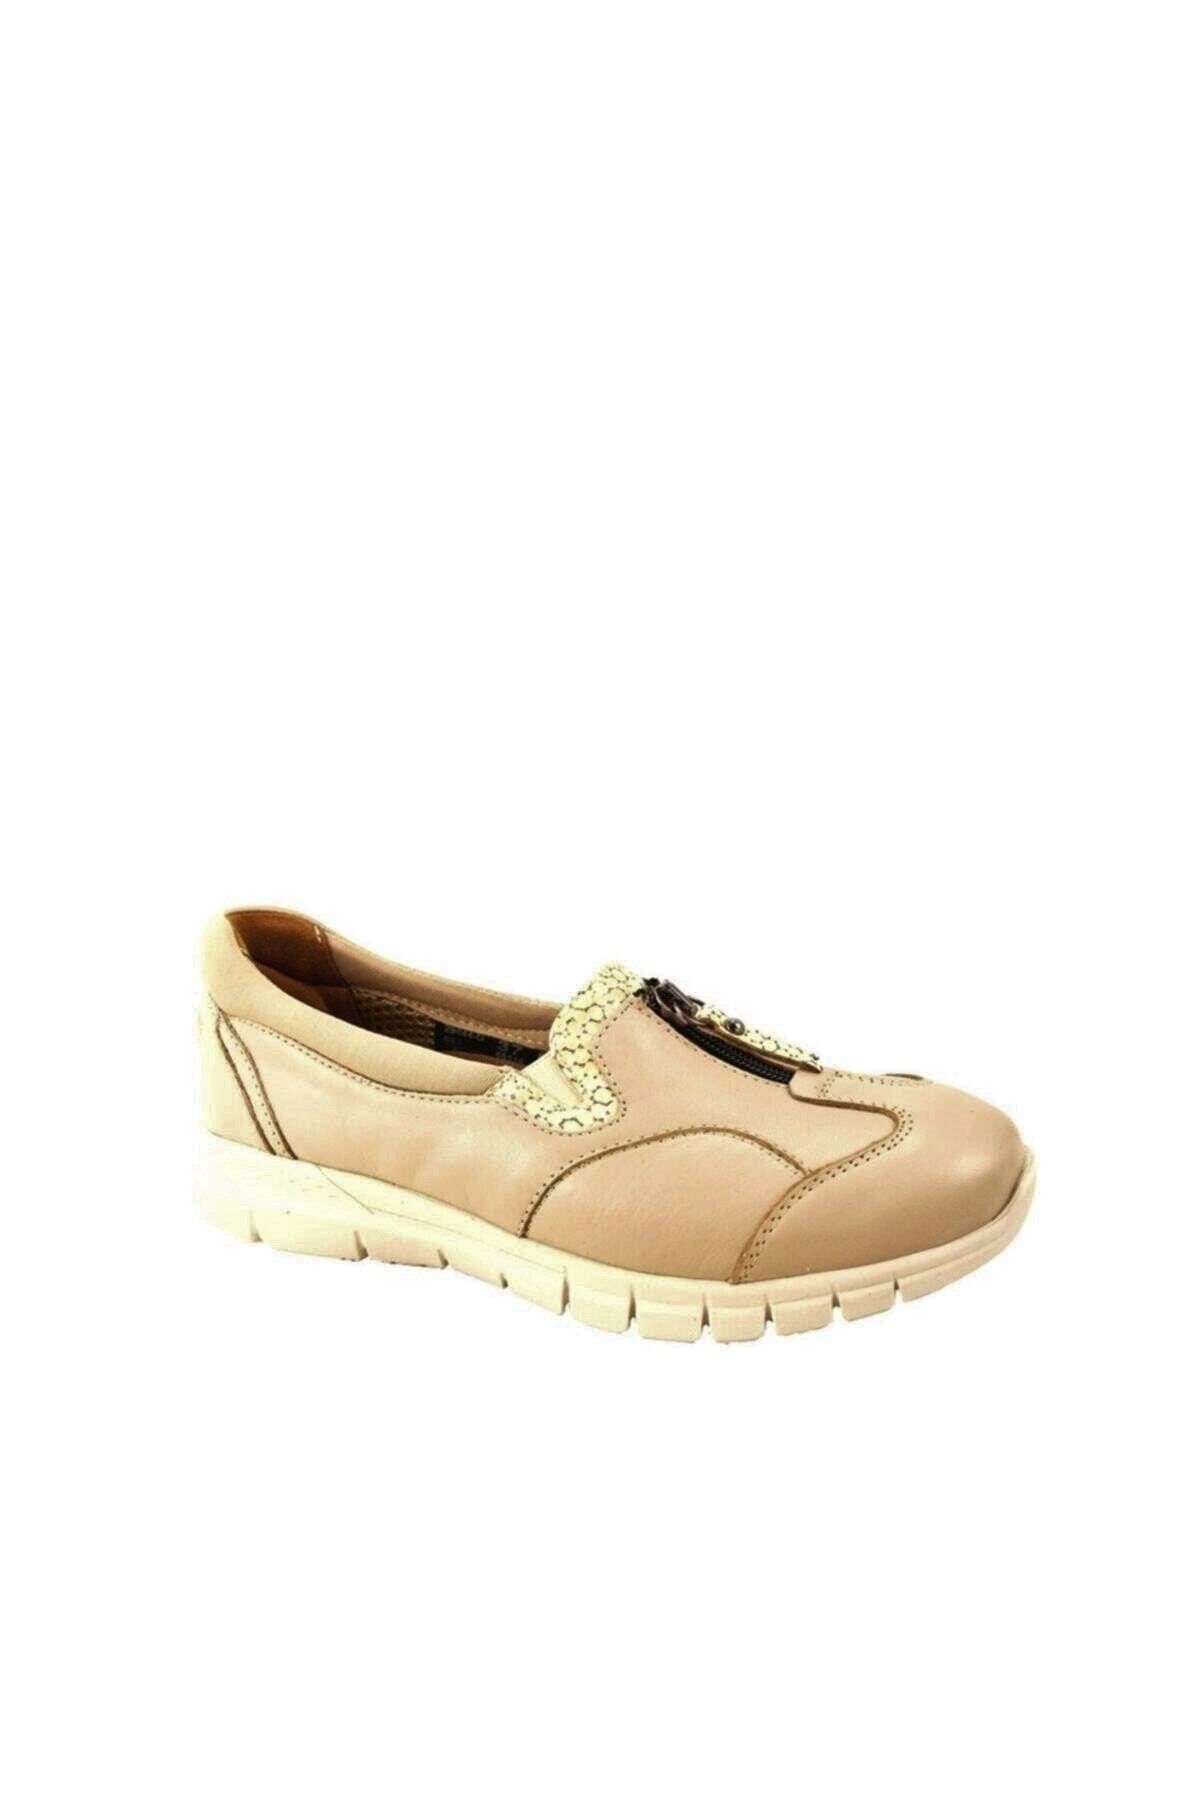 Forelli Lılyum-g Comfort Kadın Ayakkabı Bej